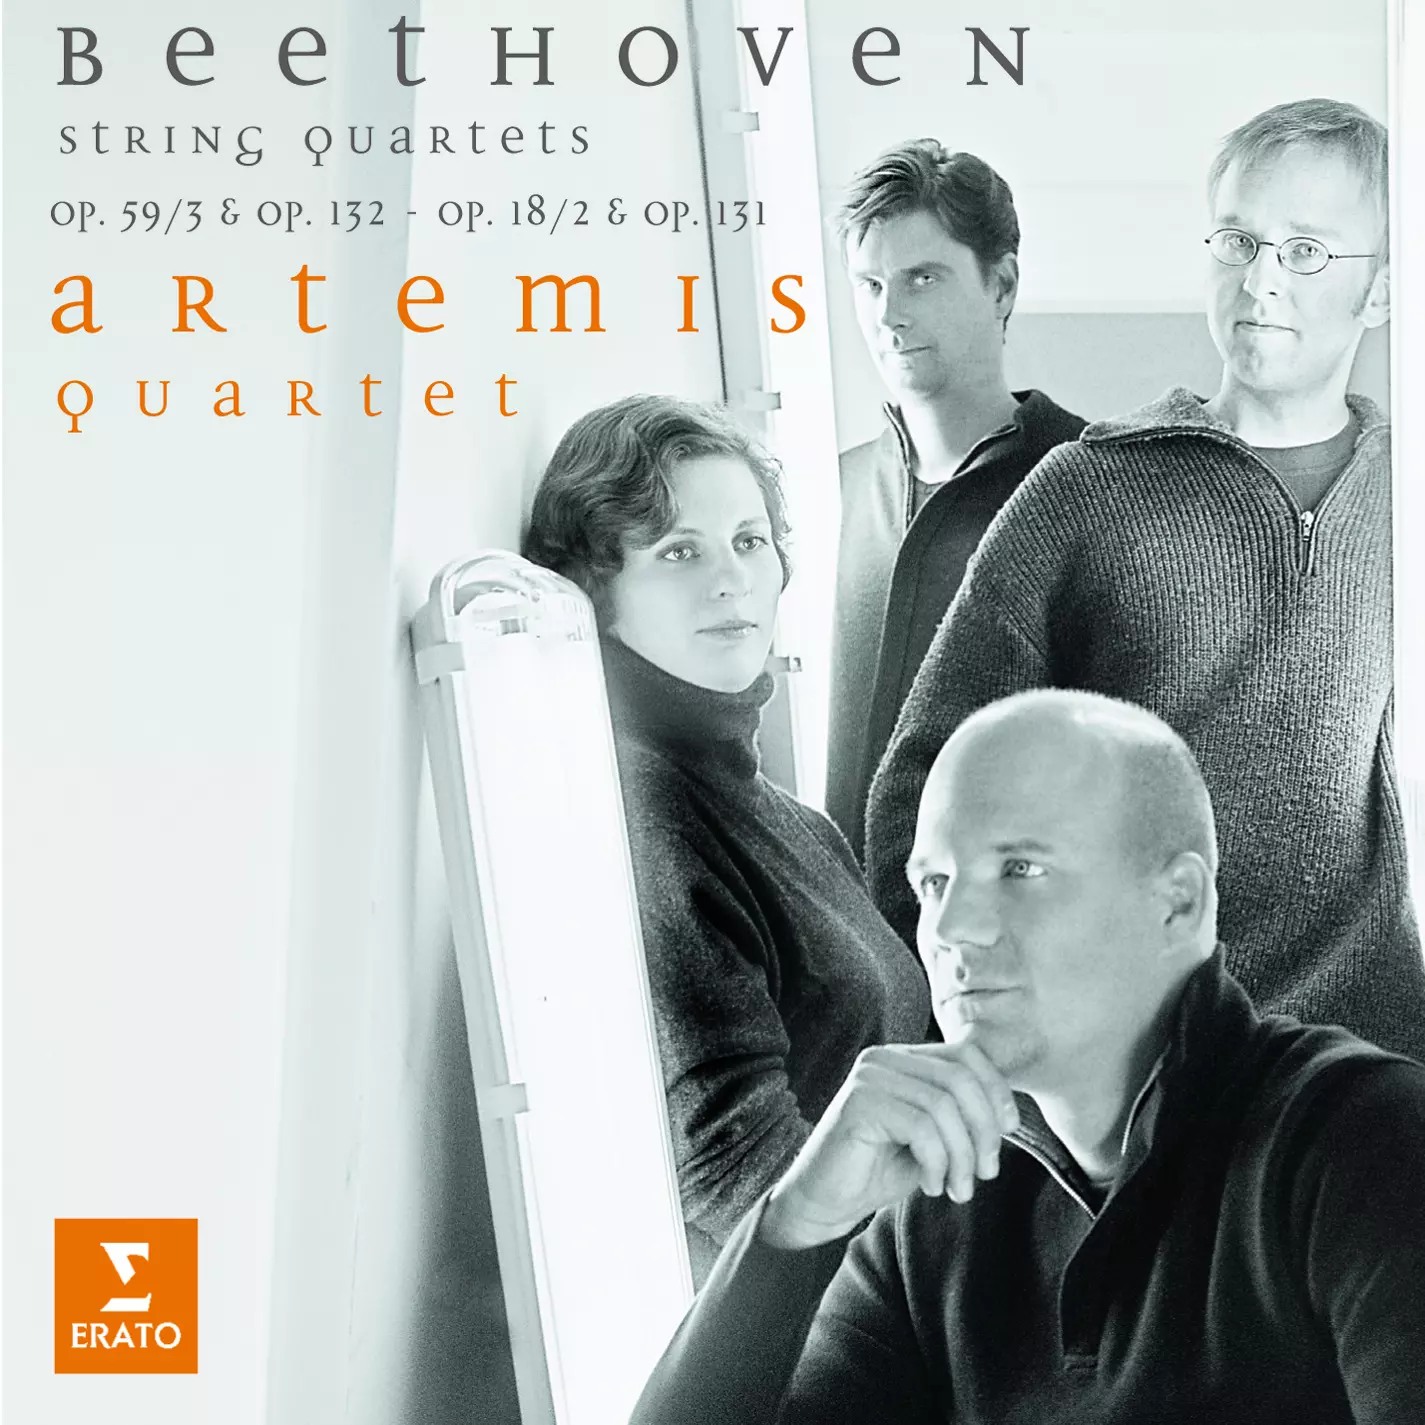 Beethoven String Quartets Op. 59/3 & 132, 18/2, 131